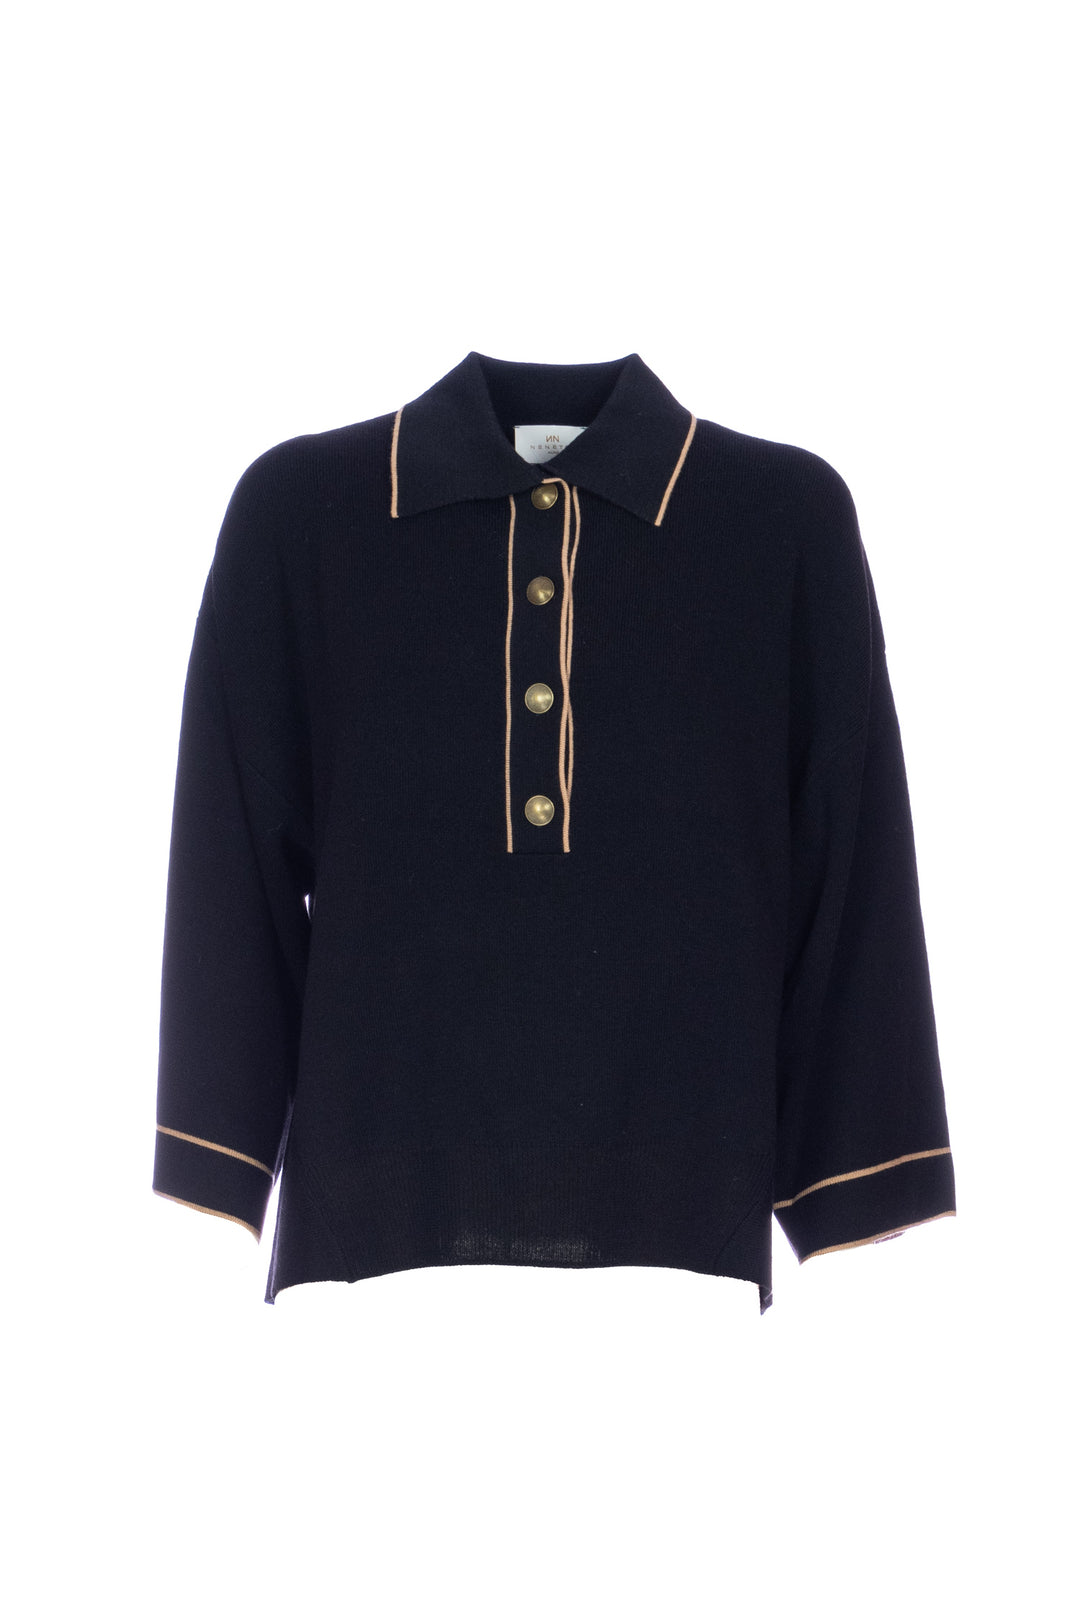 NENETTE Maglia “MATTHIS” nera in lana blend con scollo a V e chiusura a camicia - Mancinelli 1954